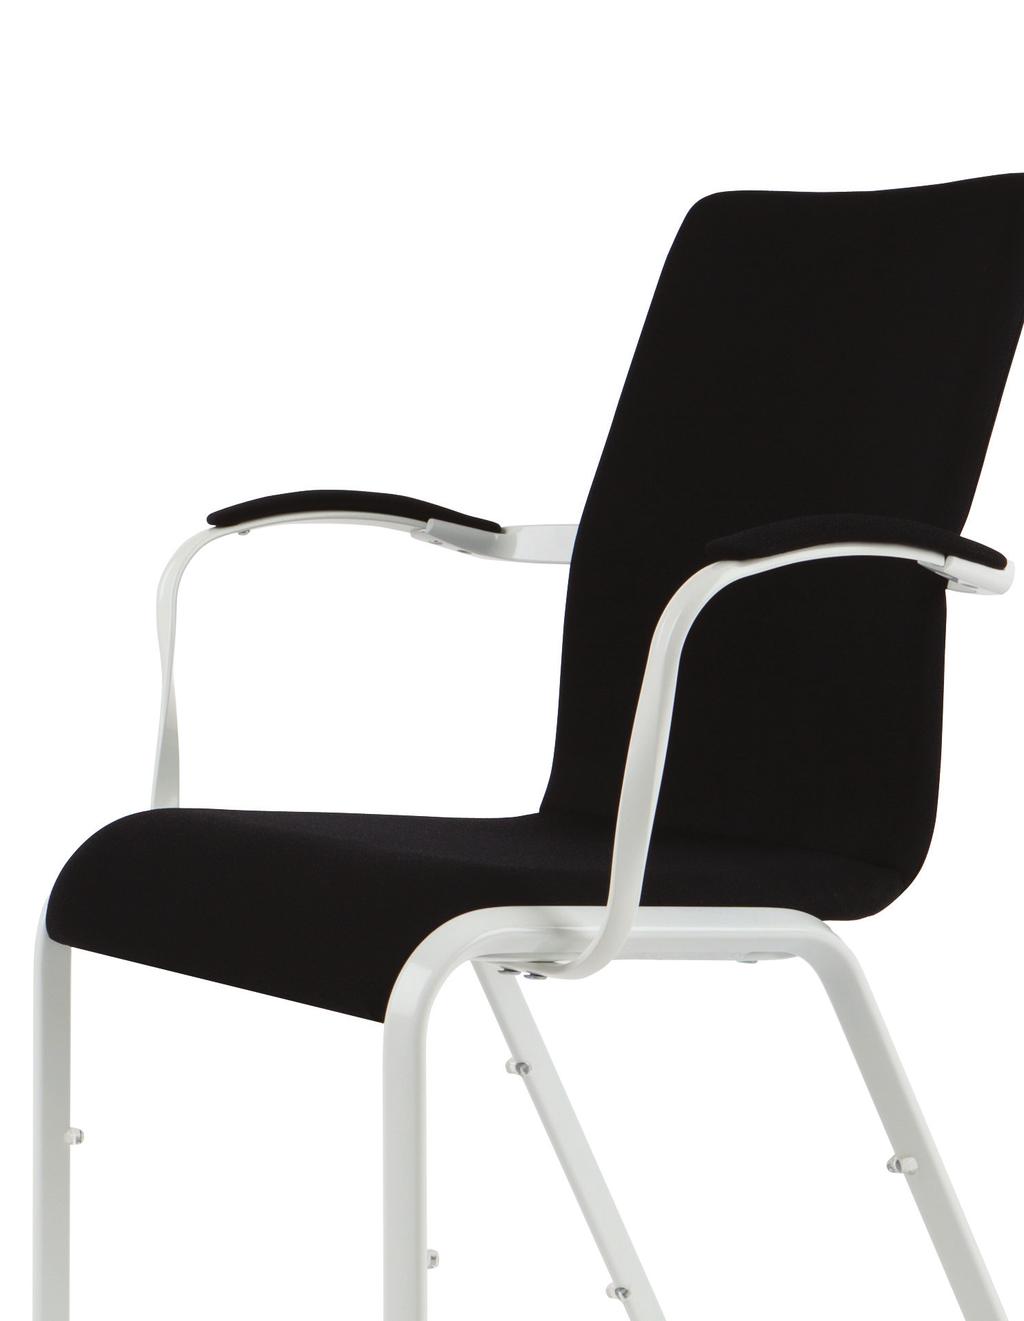 Le sedie Mendola garantiscono un nuovo e superiore livello di confort ai tuoi eventi grazie all'innovativa tecnologia di seduta ProBax Le sedie polifunzionali Mendola sono ideali per uso conferenze e